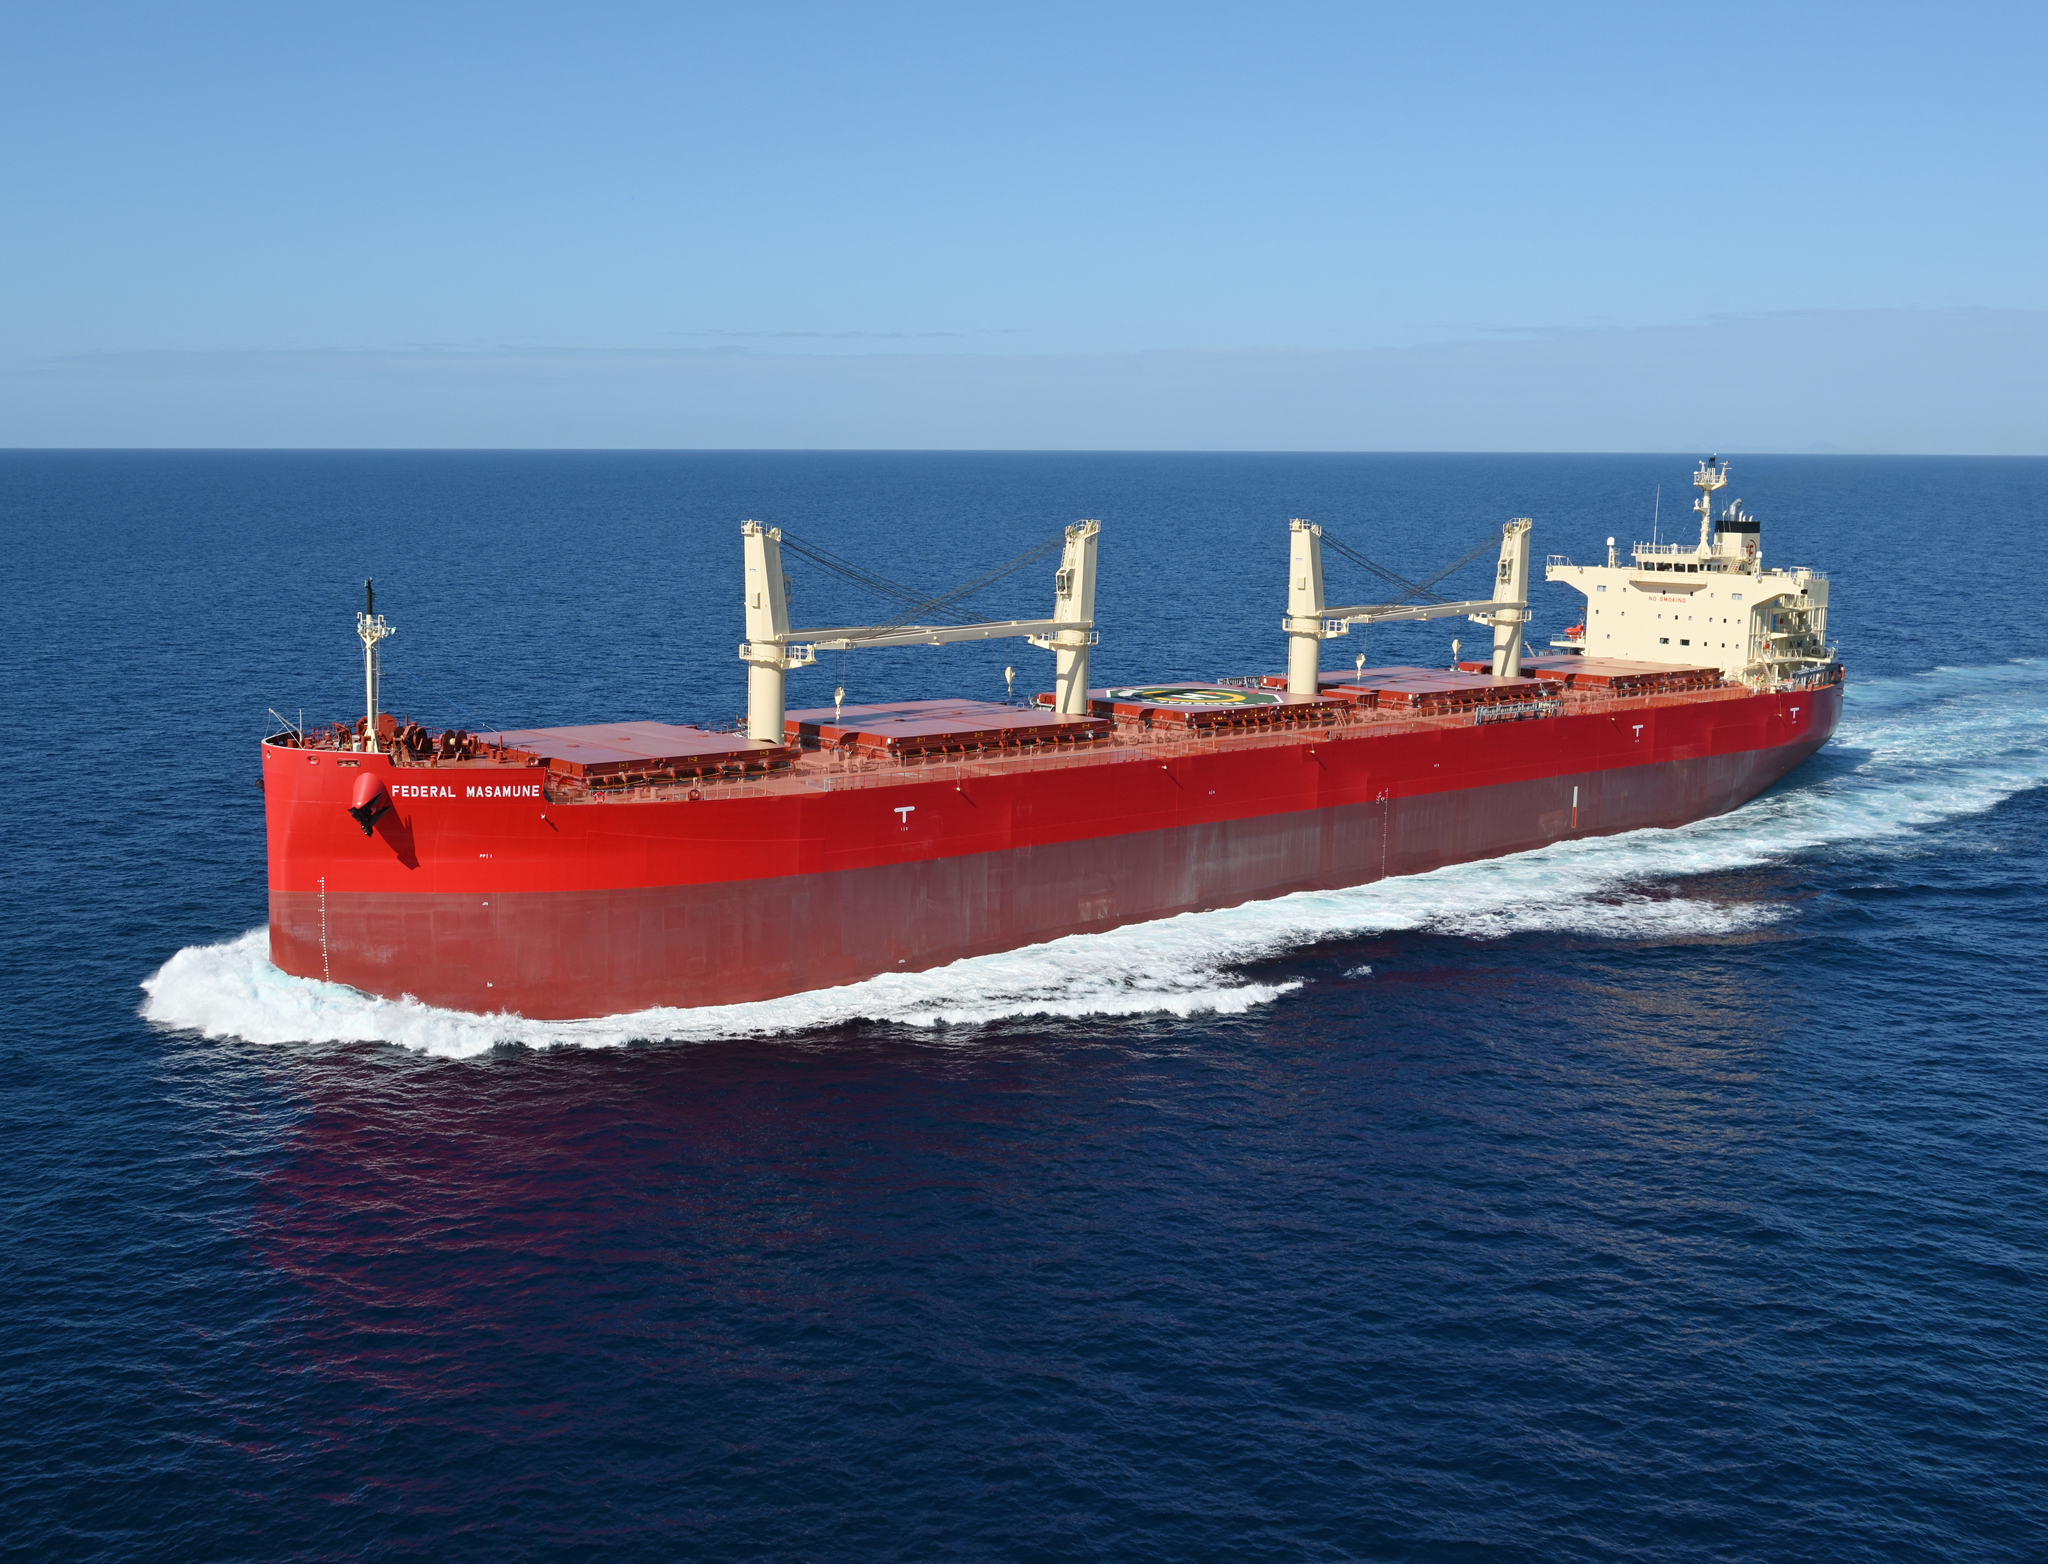 Fuyo added new bulk carrier in the fleet